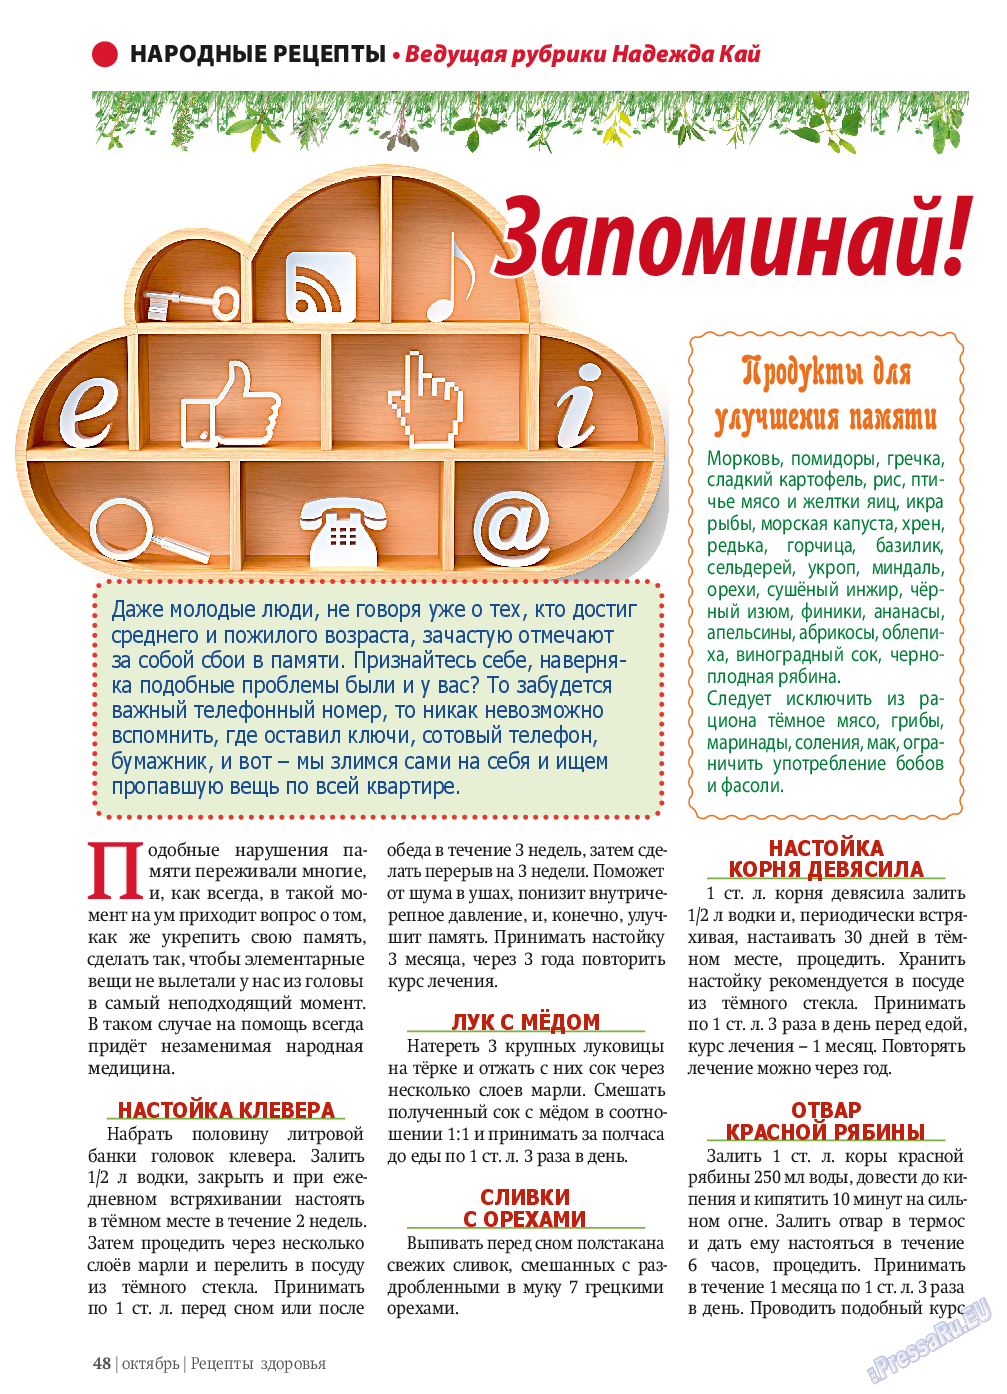 Рецепты здоровья, журнал. 2013 №10 стр.48